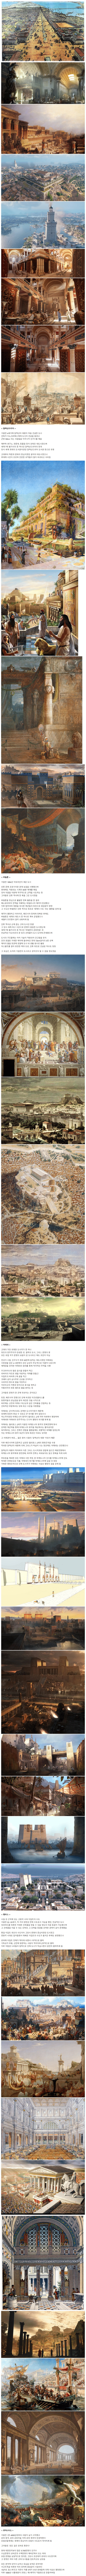 2 전설 속의 고대 도시들.jpg